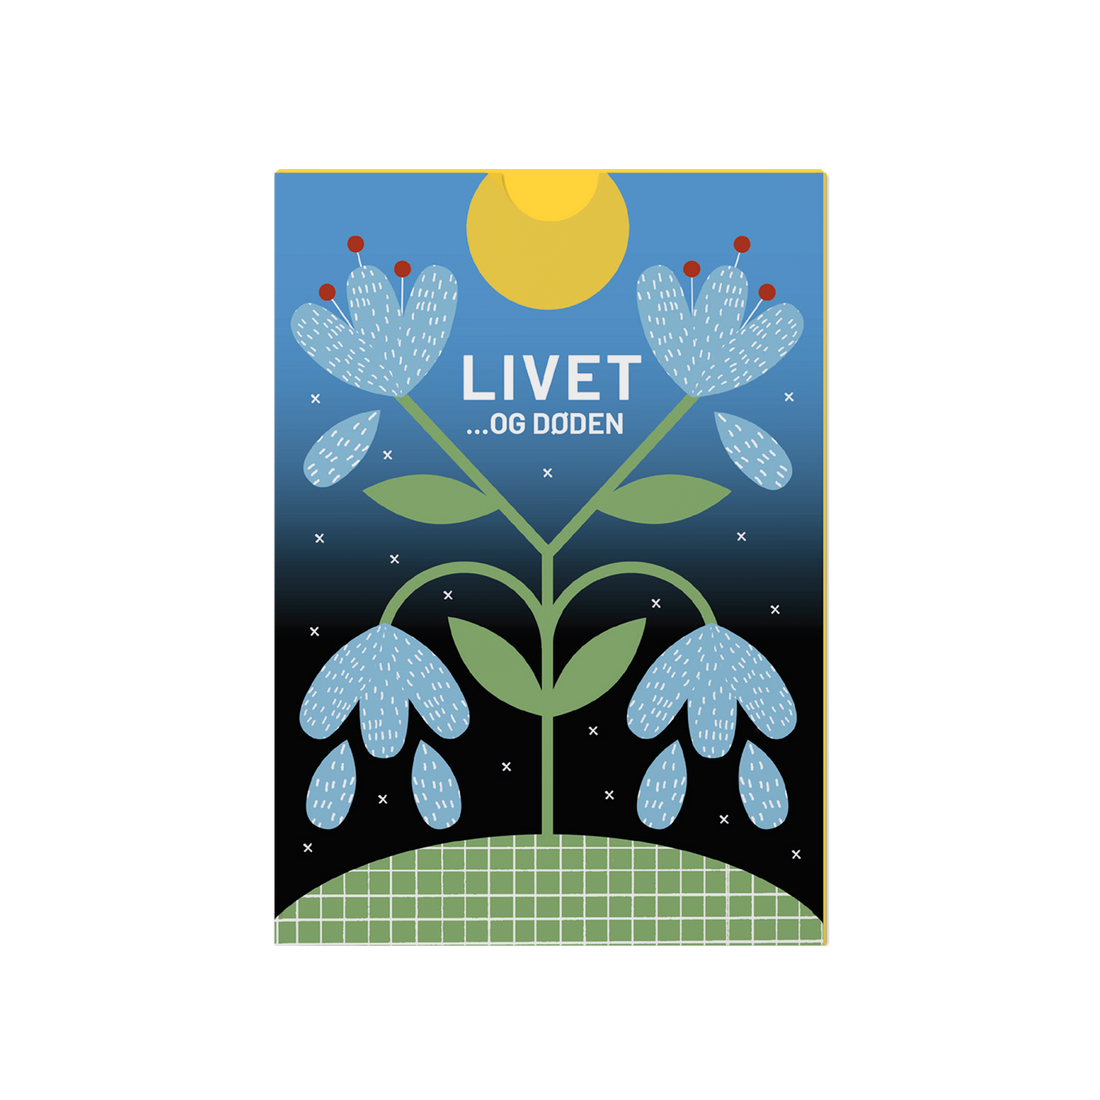 LIVET og døden - Samtalekort der hjælper med at sætte ord på de store spørgsmål om livet og døden